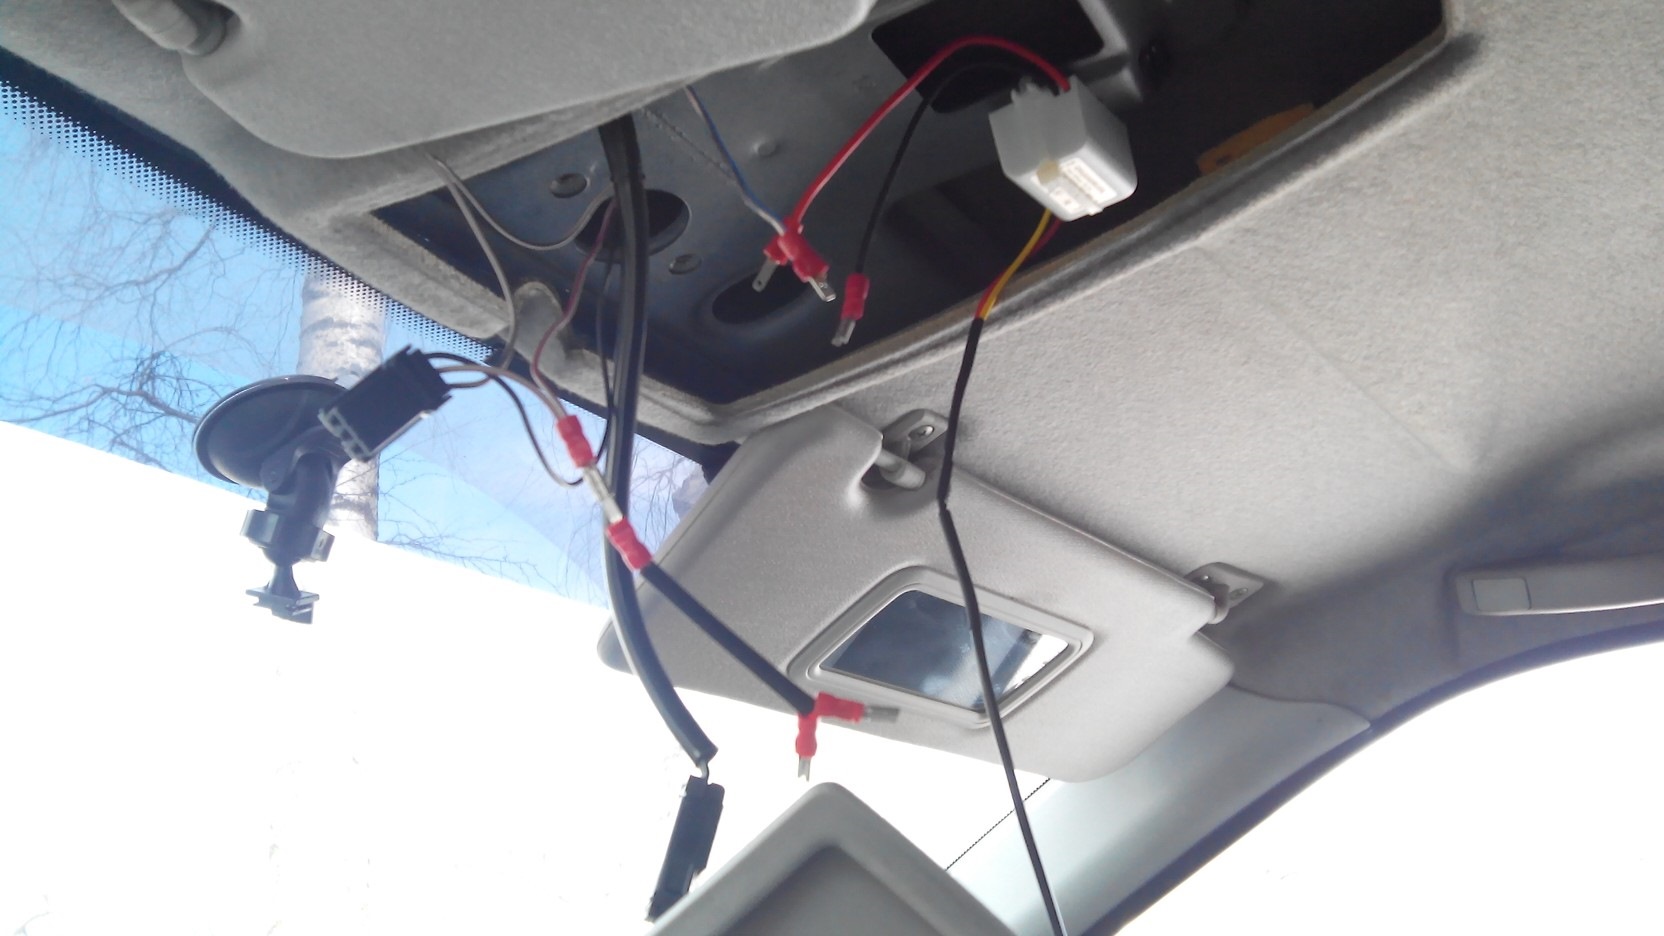 Подключение видеорегистратора в автомобиле без прикуривателя, как подключить регистратор без прикуривателя, одключить видеорегистратор к плафону освещения